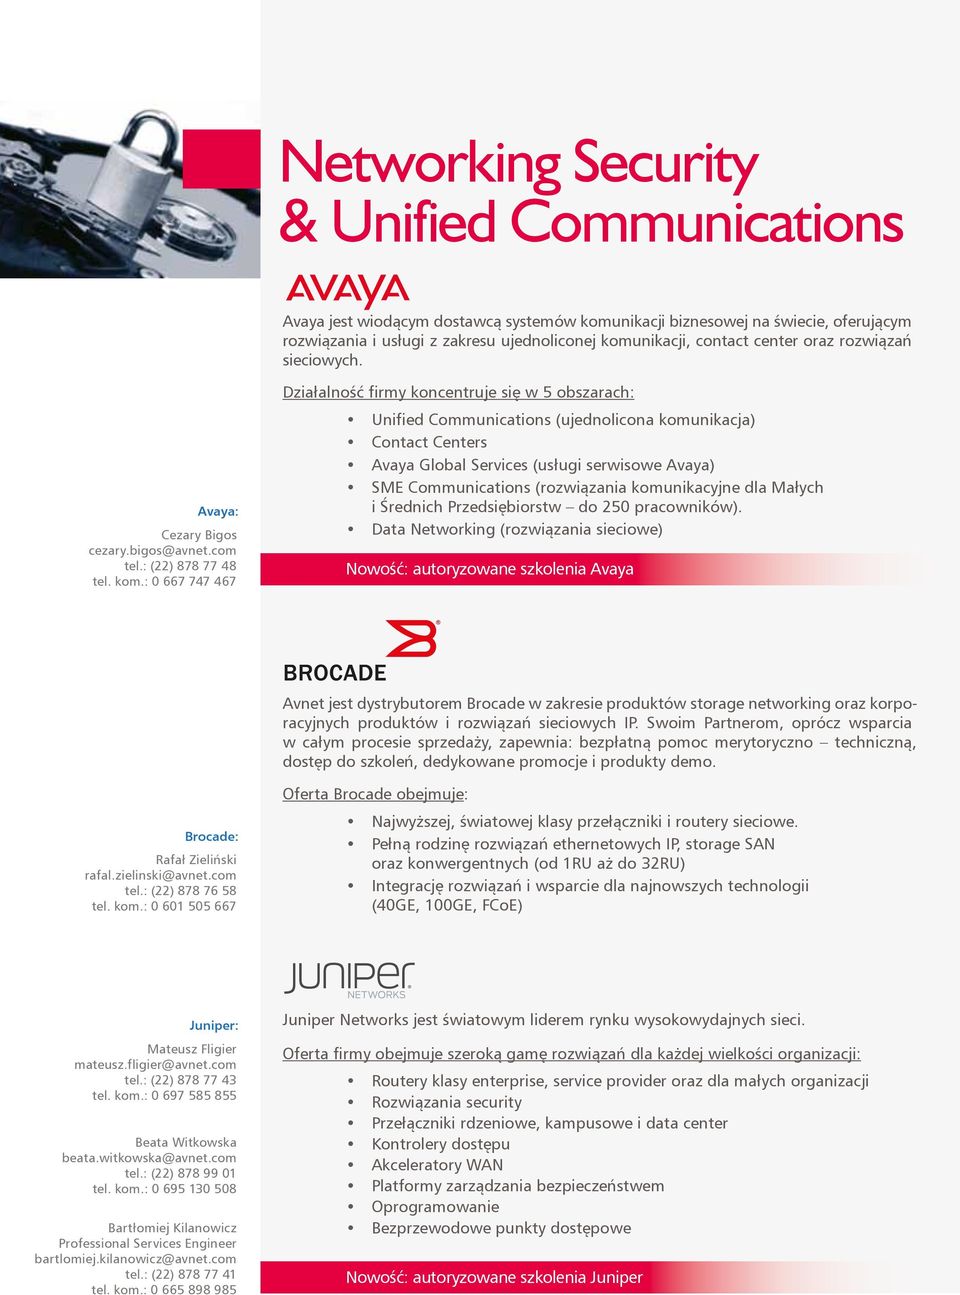 : 0 667 747 467 Działalność firmy koncentruje się w 5 obszarach: Unified Communications (ujednolicona komunikacja) Contact Centers Avaya Global Services (usługi serwisowe Avaya) SME Communications